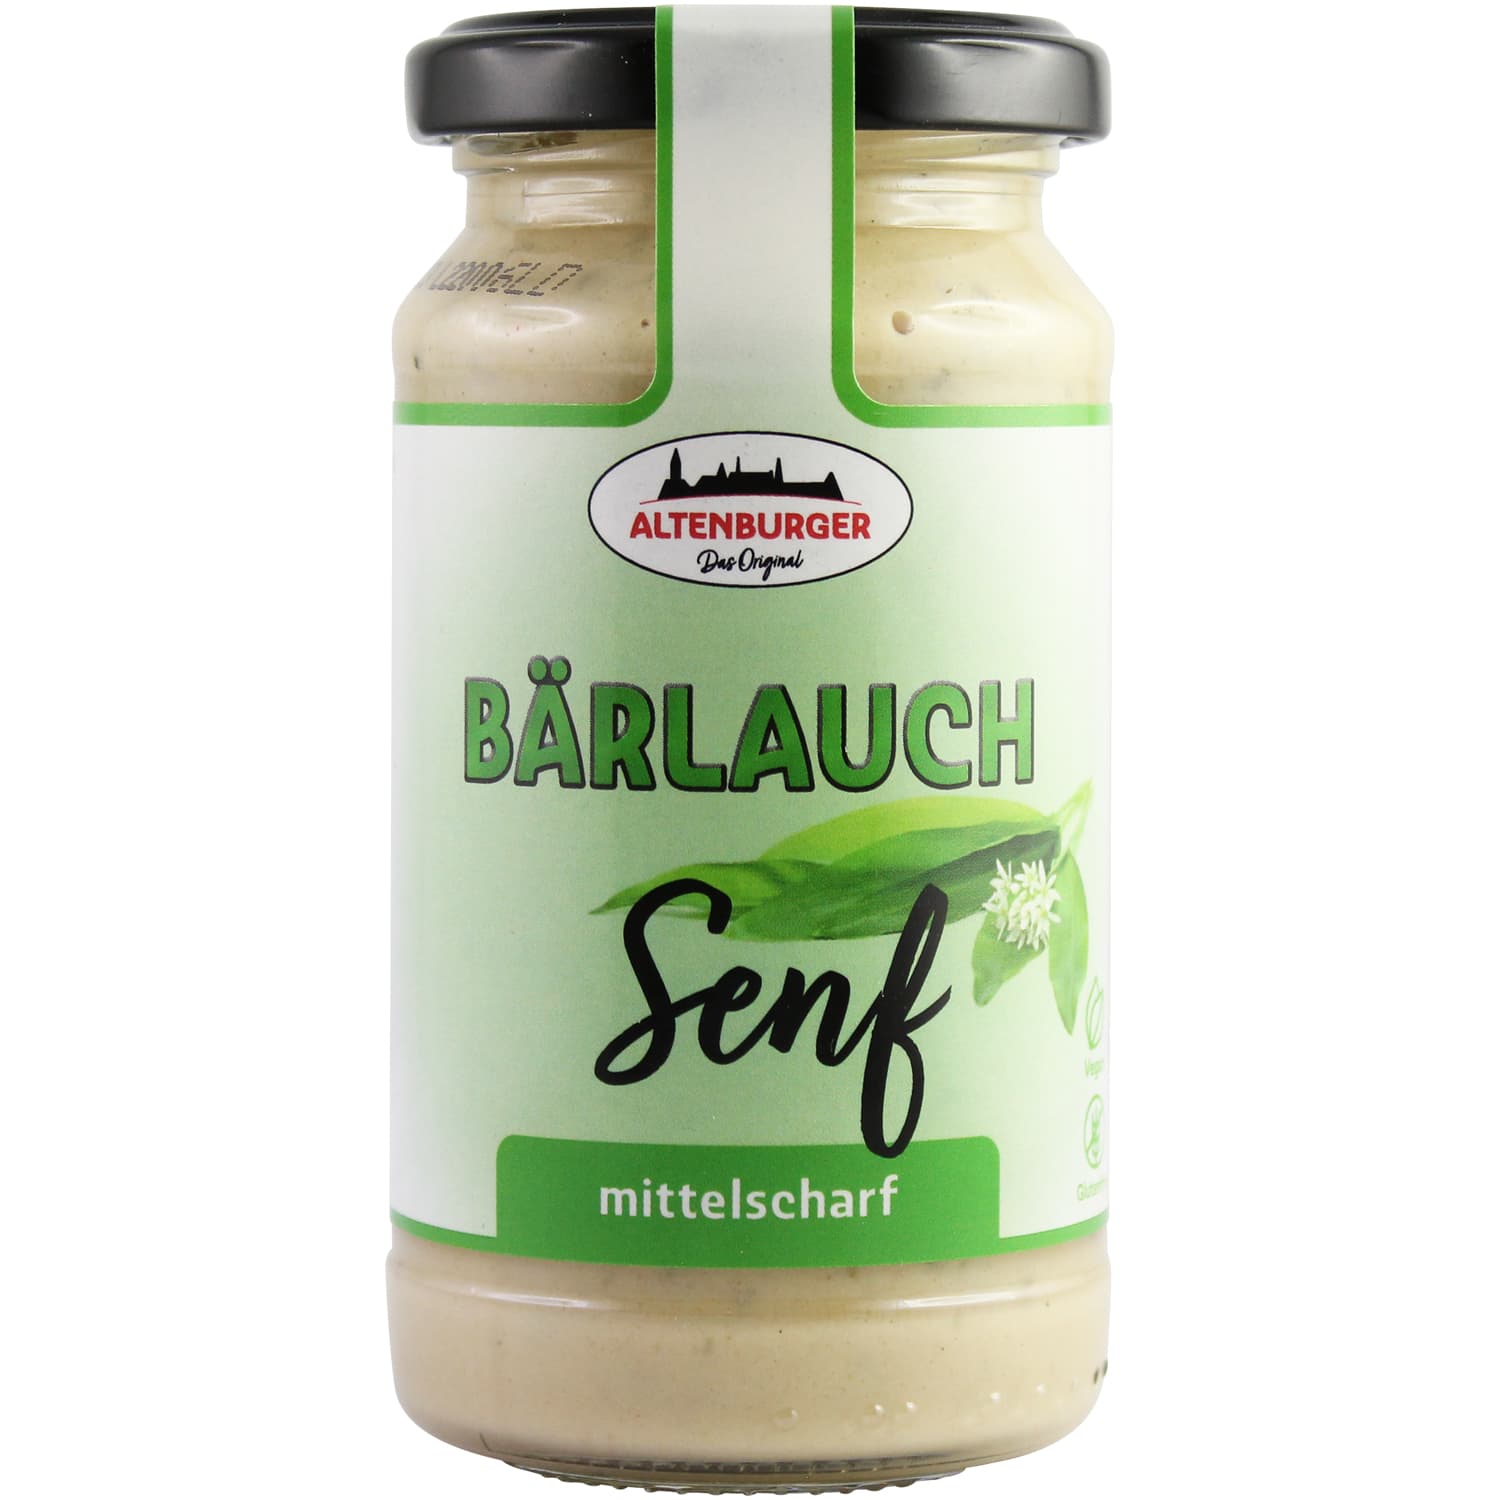 Ossikiste.de | Altenburger Bärlauch Senf 200 ml | online kaufen